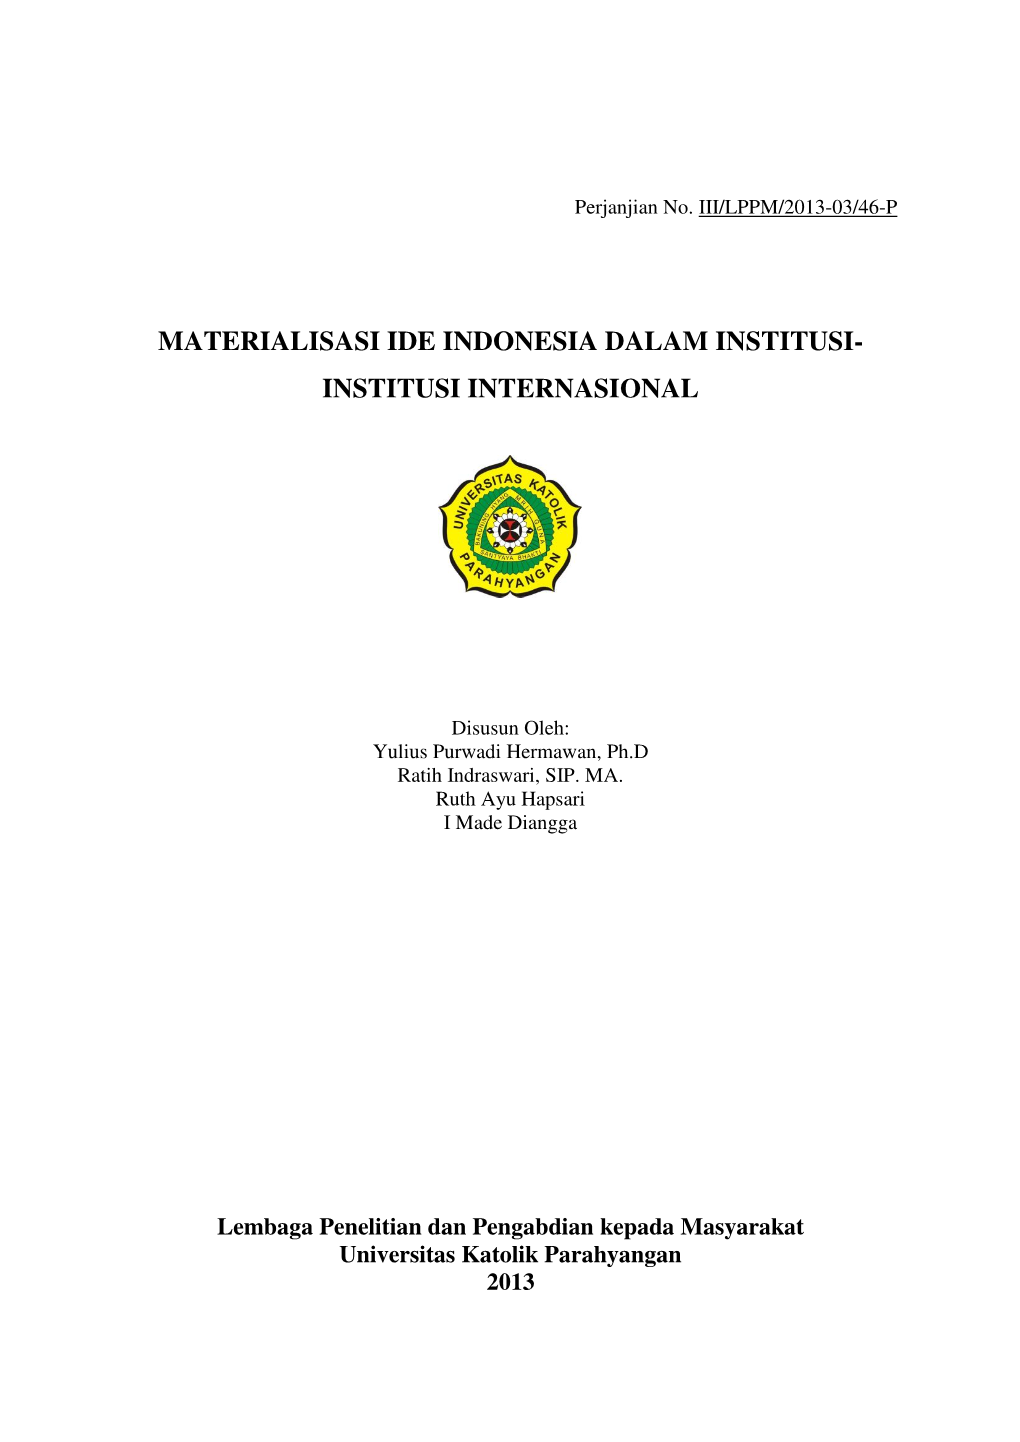 Materialisasi Ide Indonesia Dalam Institusi- Institusi Internasional